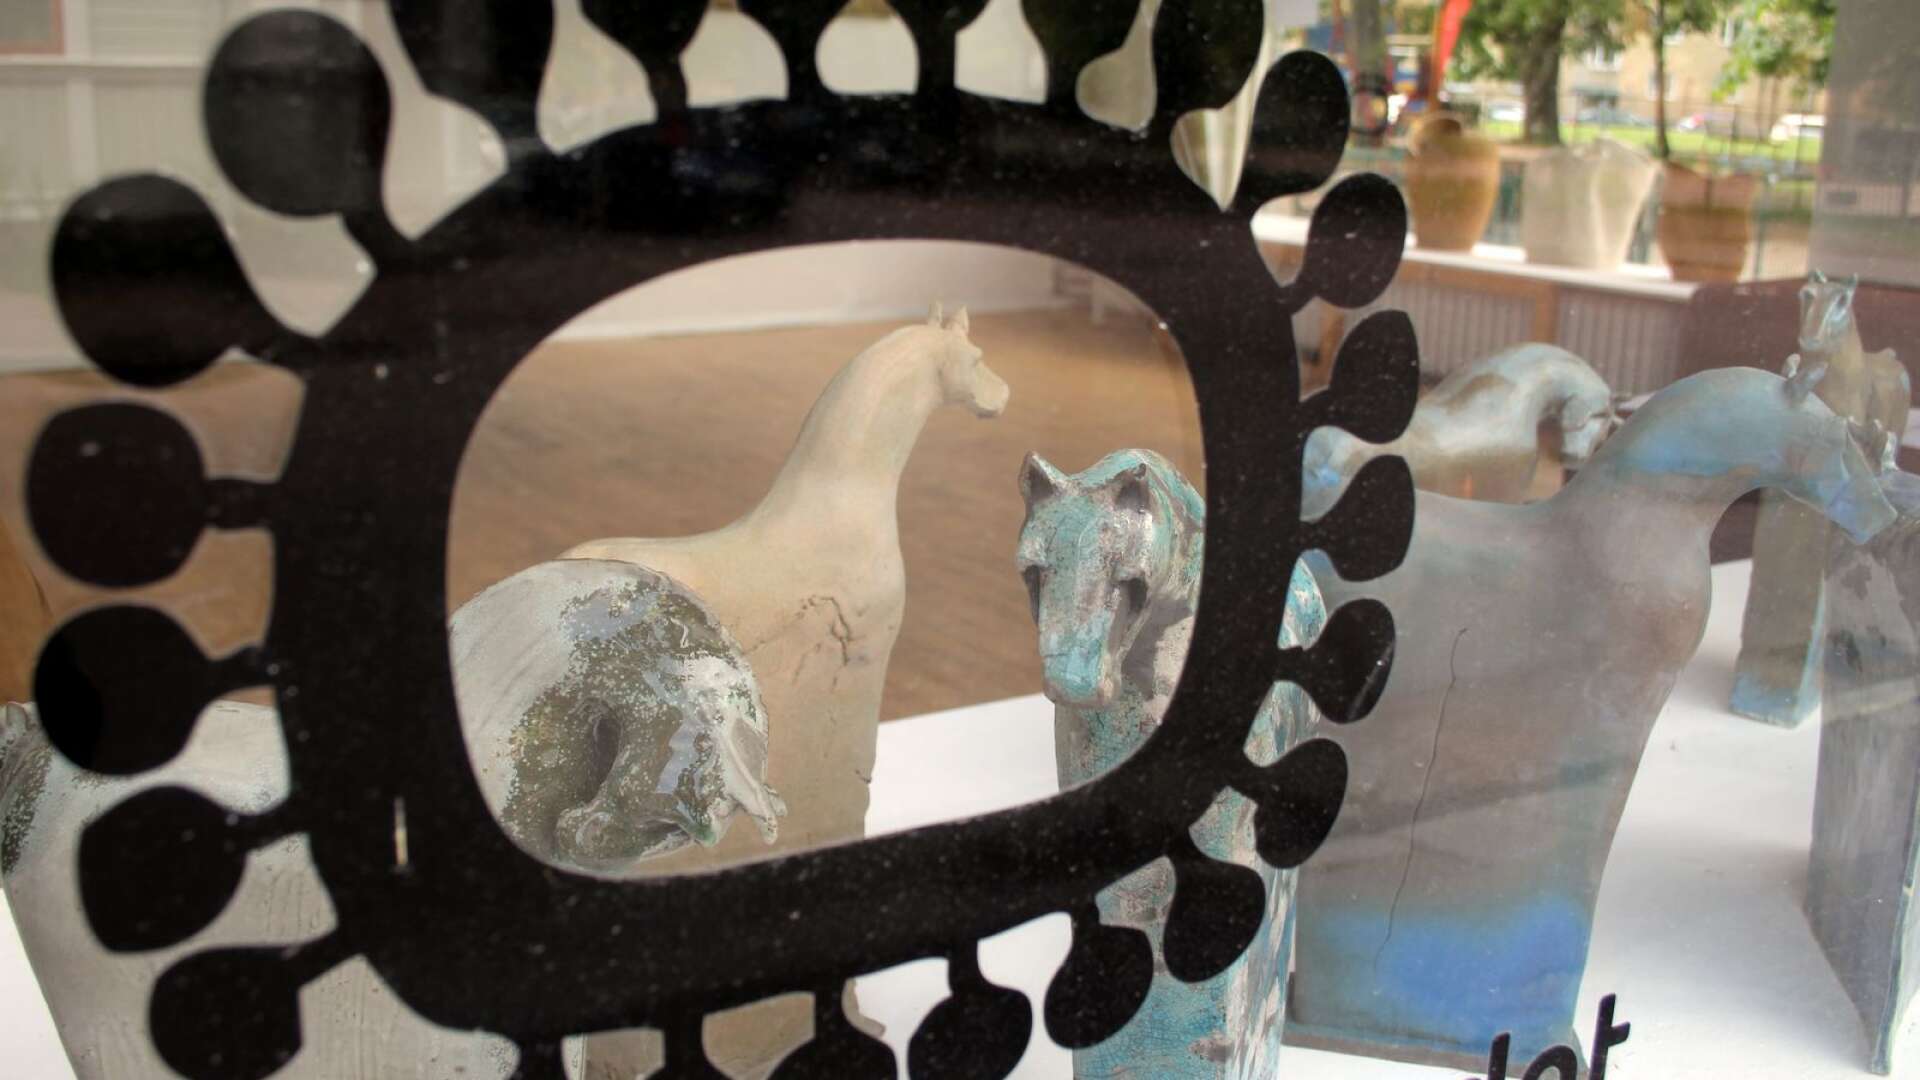 Konstfrämjandet visar konst av elever från Kyrkerud. Själva galleriet är stängt men allt syns från de stora skyltfönstren. På bilden syns keramikhästar av Ringvor Hägglöf.